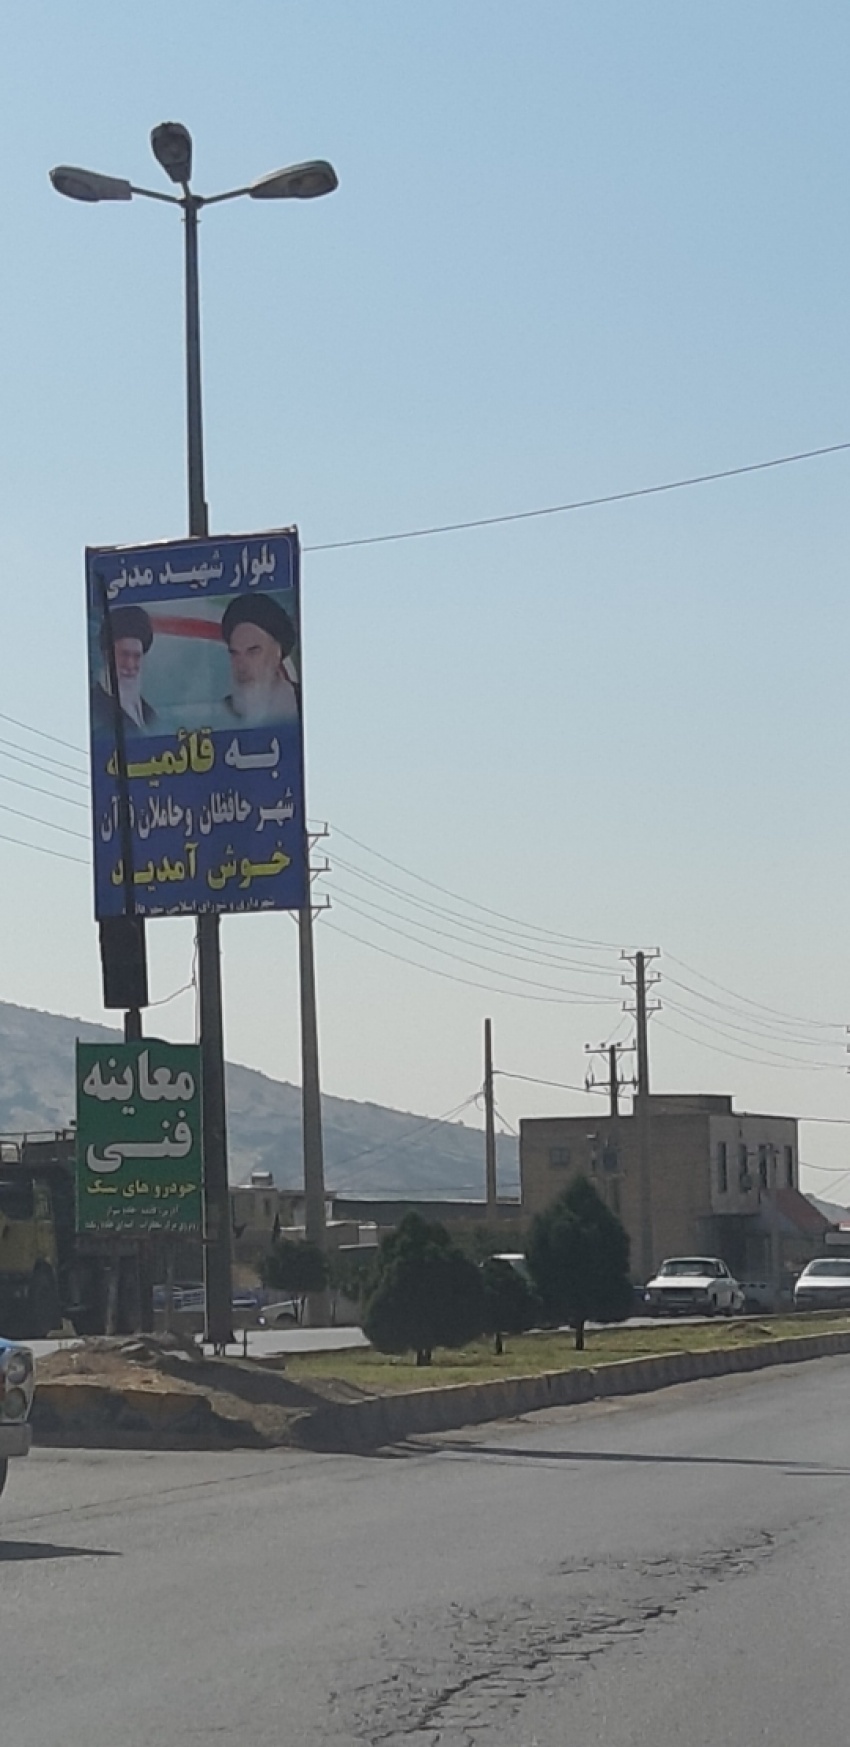 شهر قائمیه، قائمیه، کازرون، ایران | لست سکند